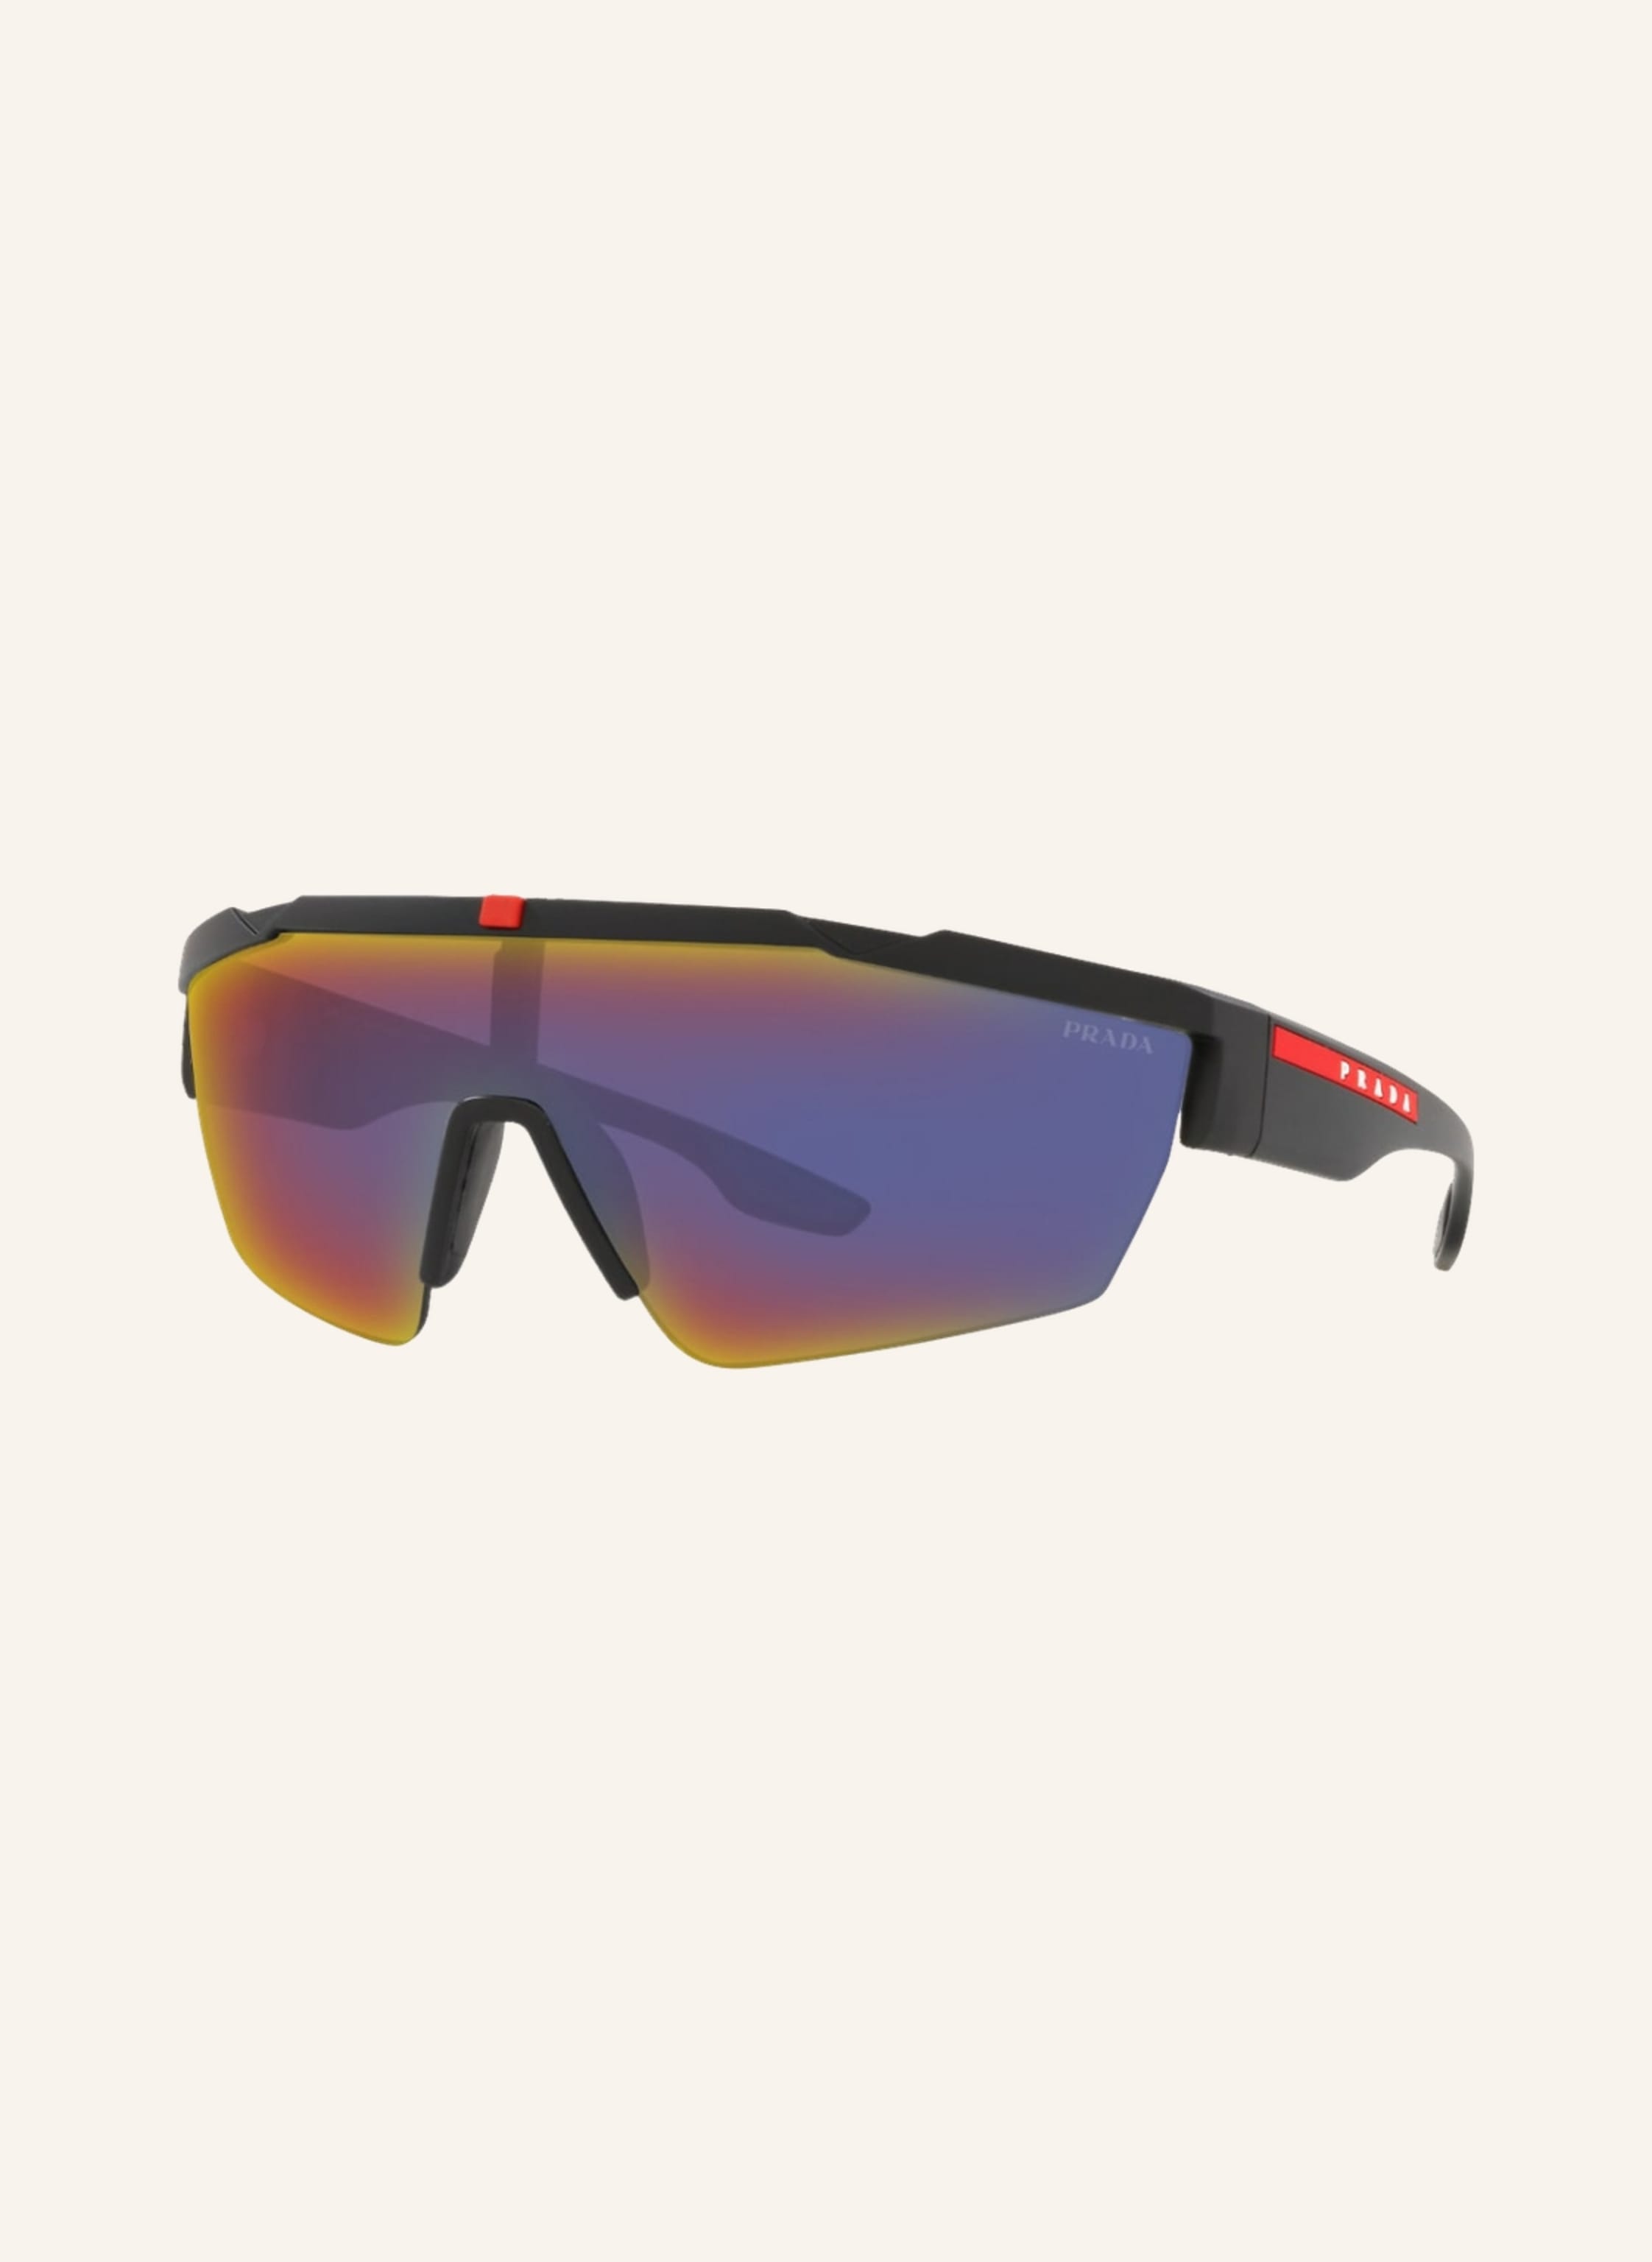 PRADA LINEA ROSSA Sunglasses PS 03XS in dg008f - black/multicolor mirrored  | Breuninger